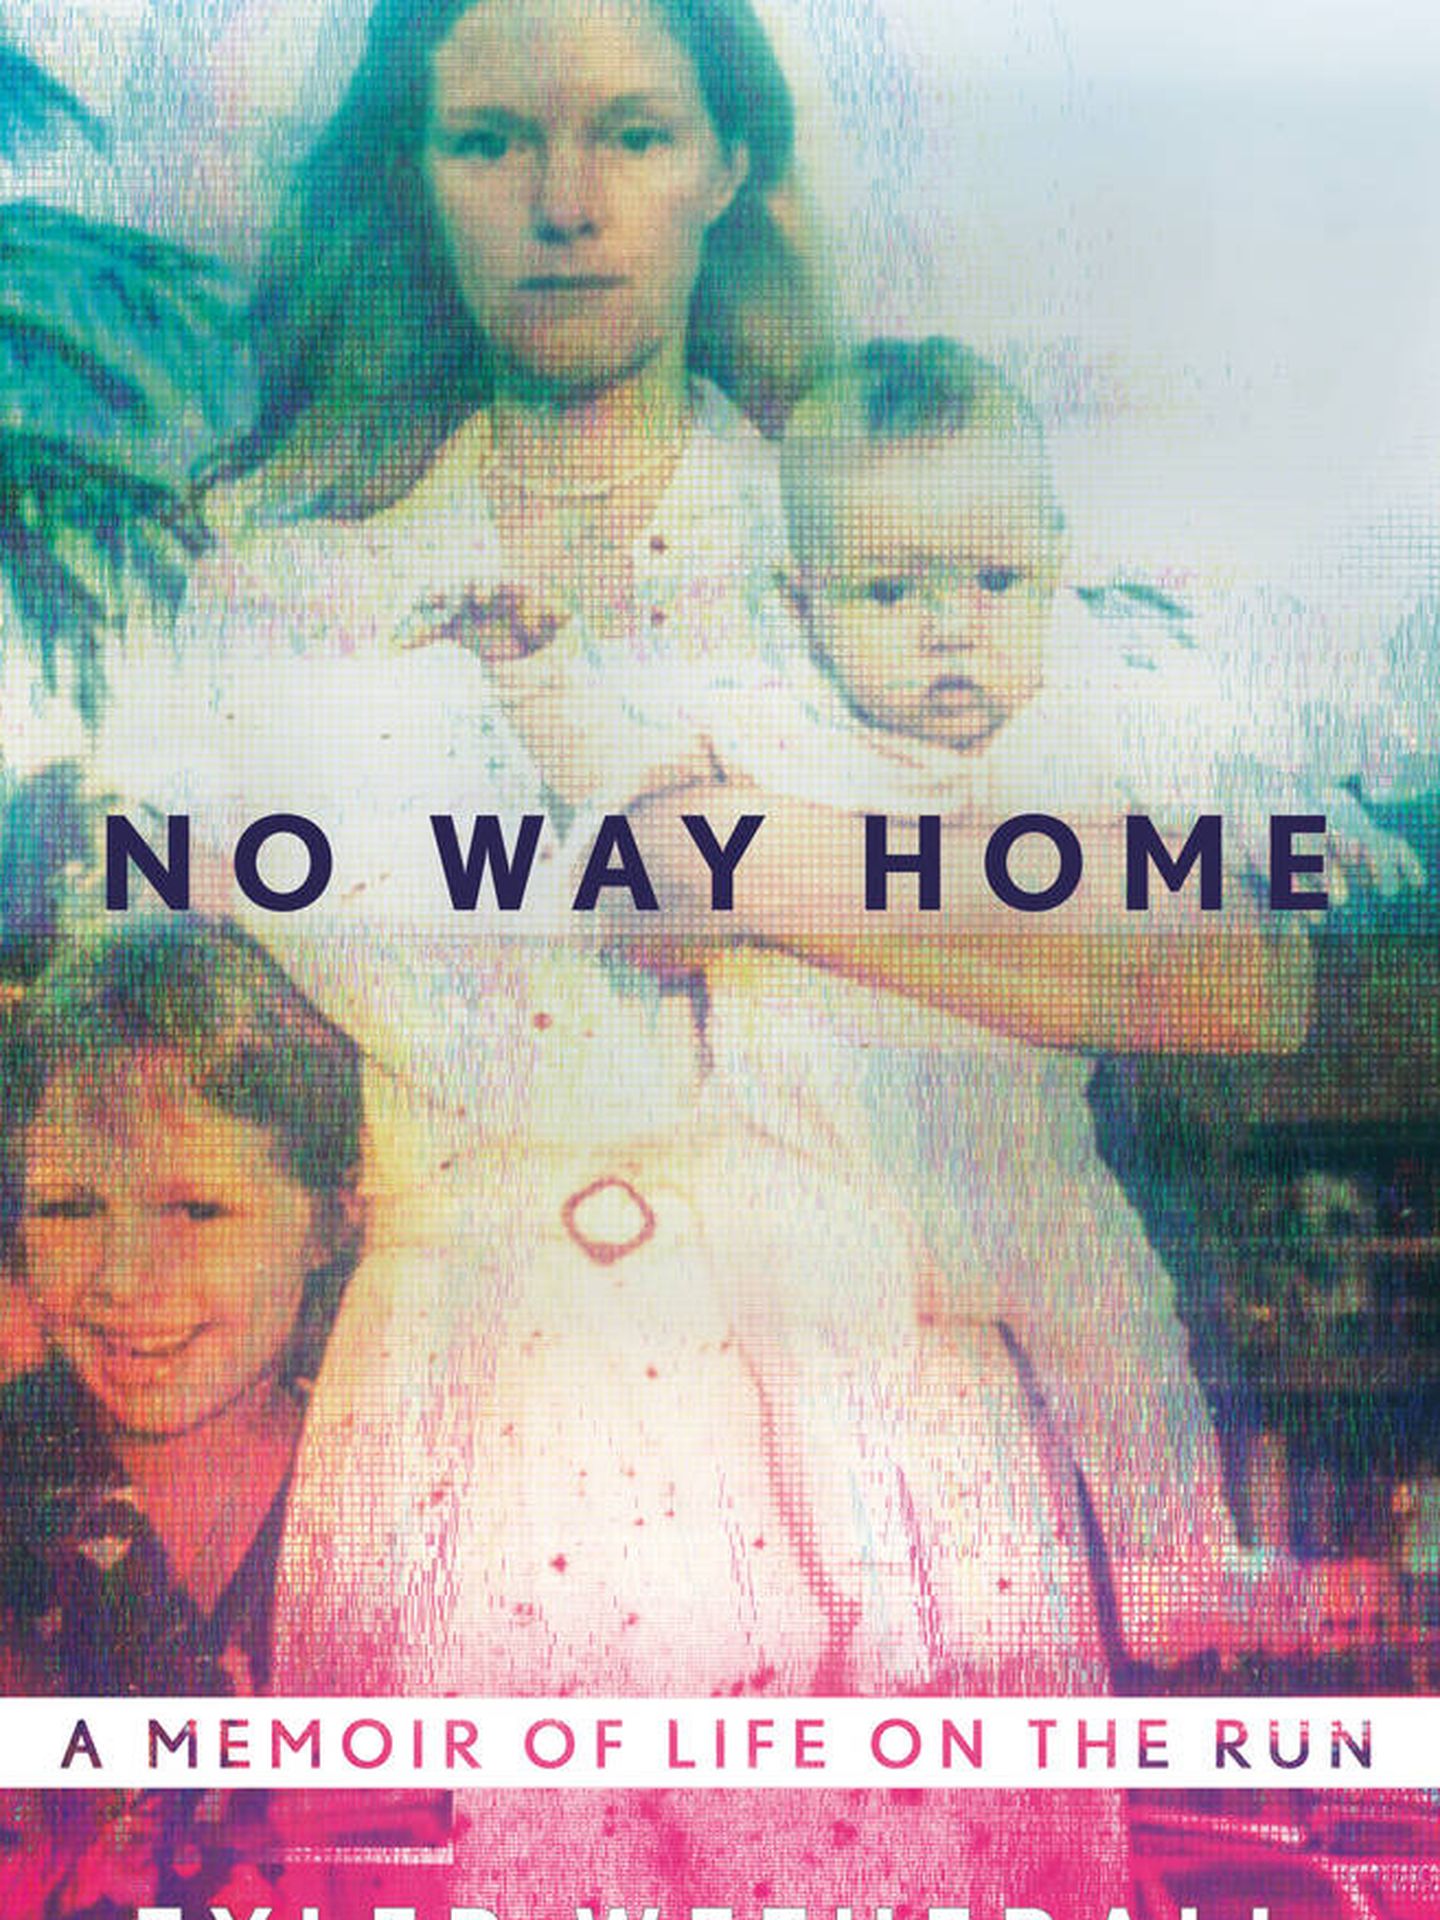 Portada del libro 'No Way Home', de Tyler Wetherall.